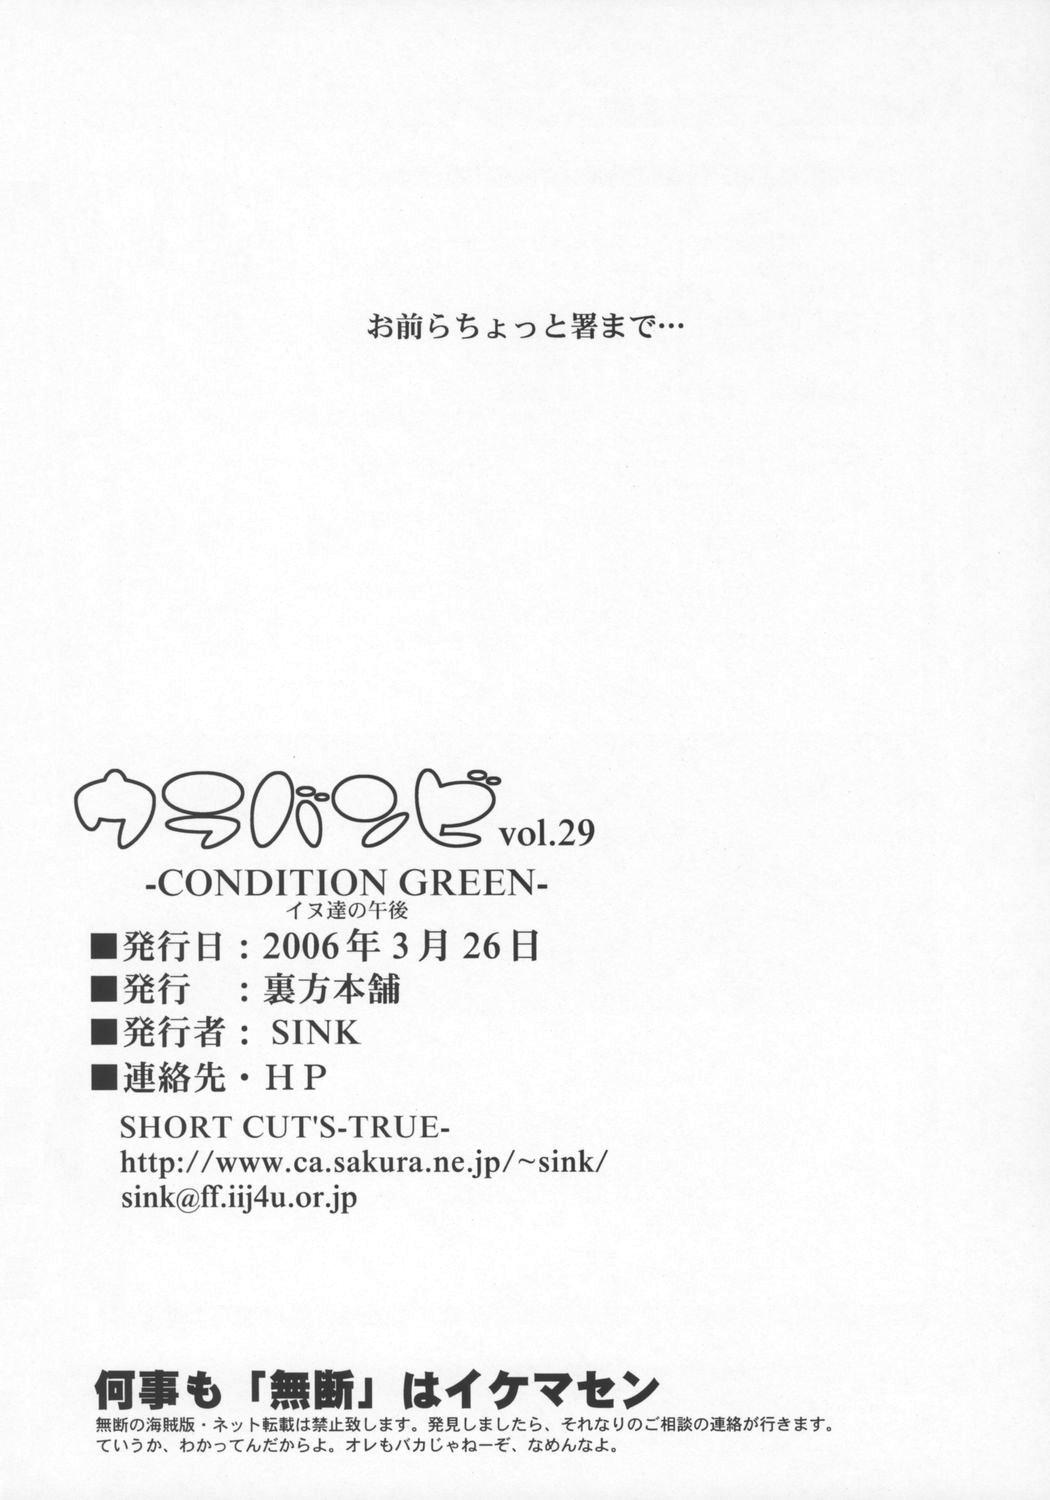 Urabambi Vol. 29 - Condition Green 24